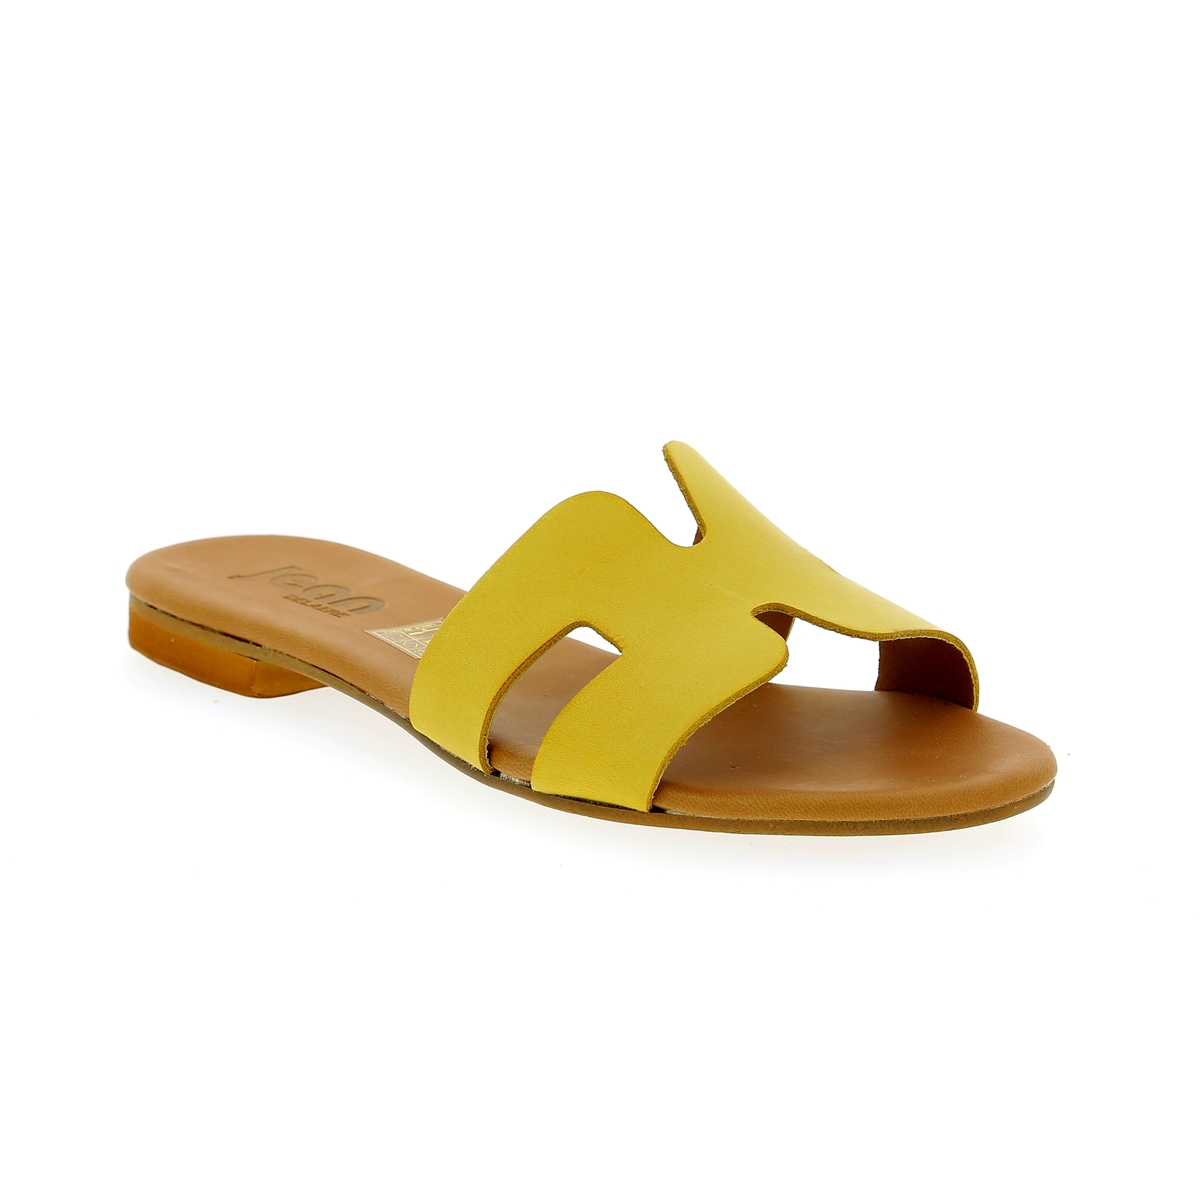 Delaere Muiltjes - slippers geel